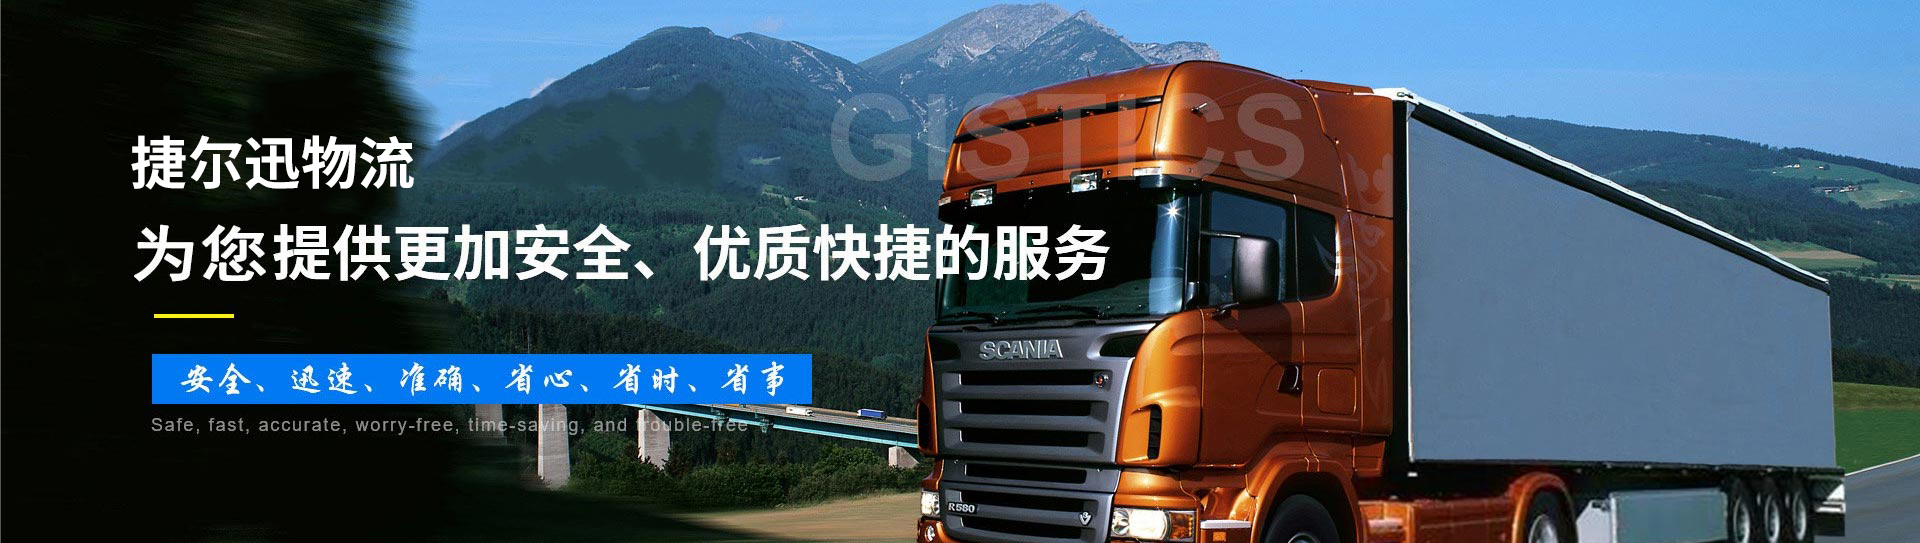 杭州物流公司|杭州货运公司欢迎您